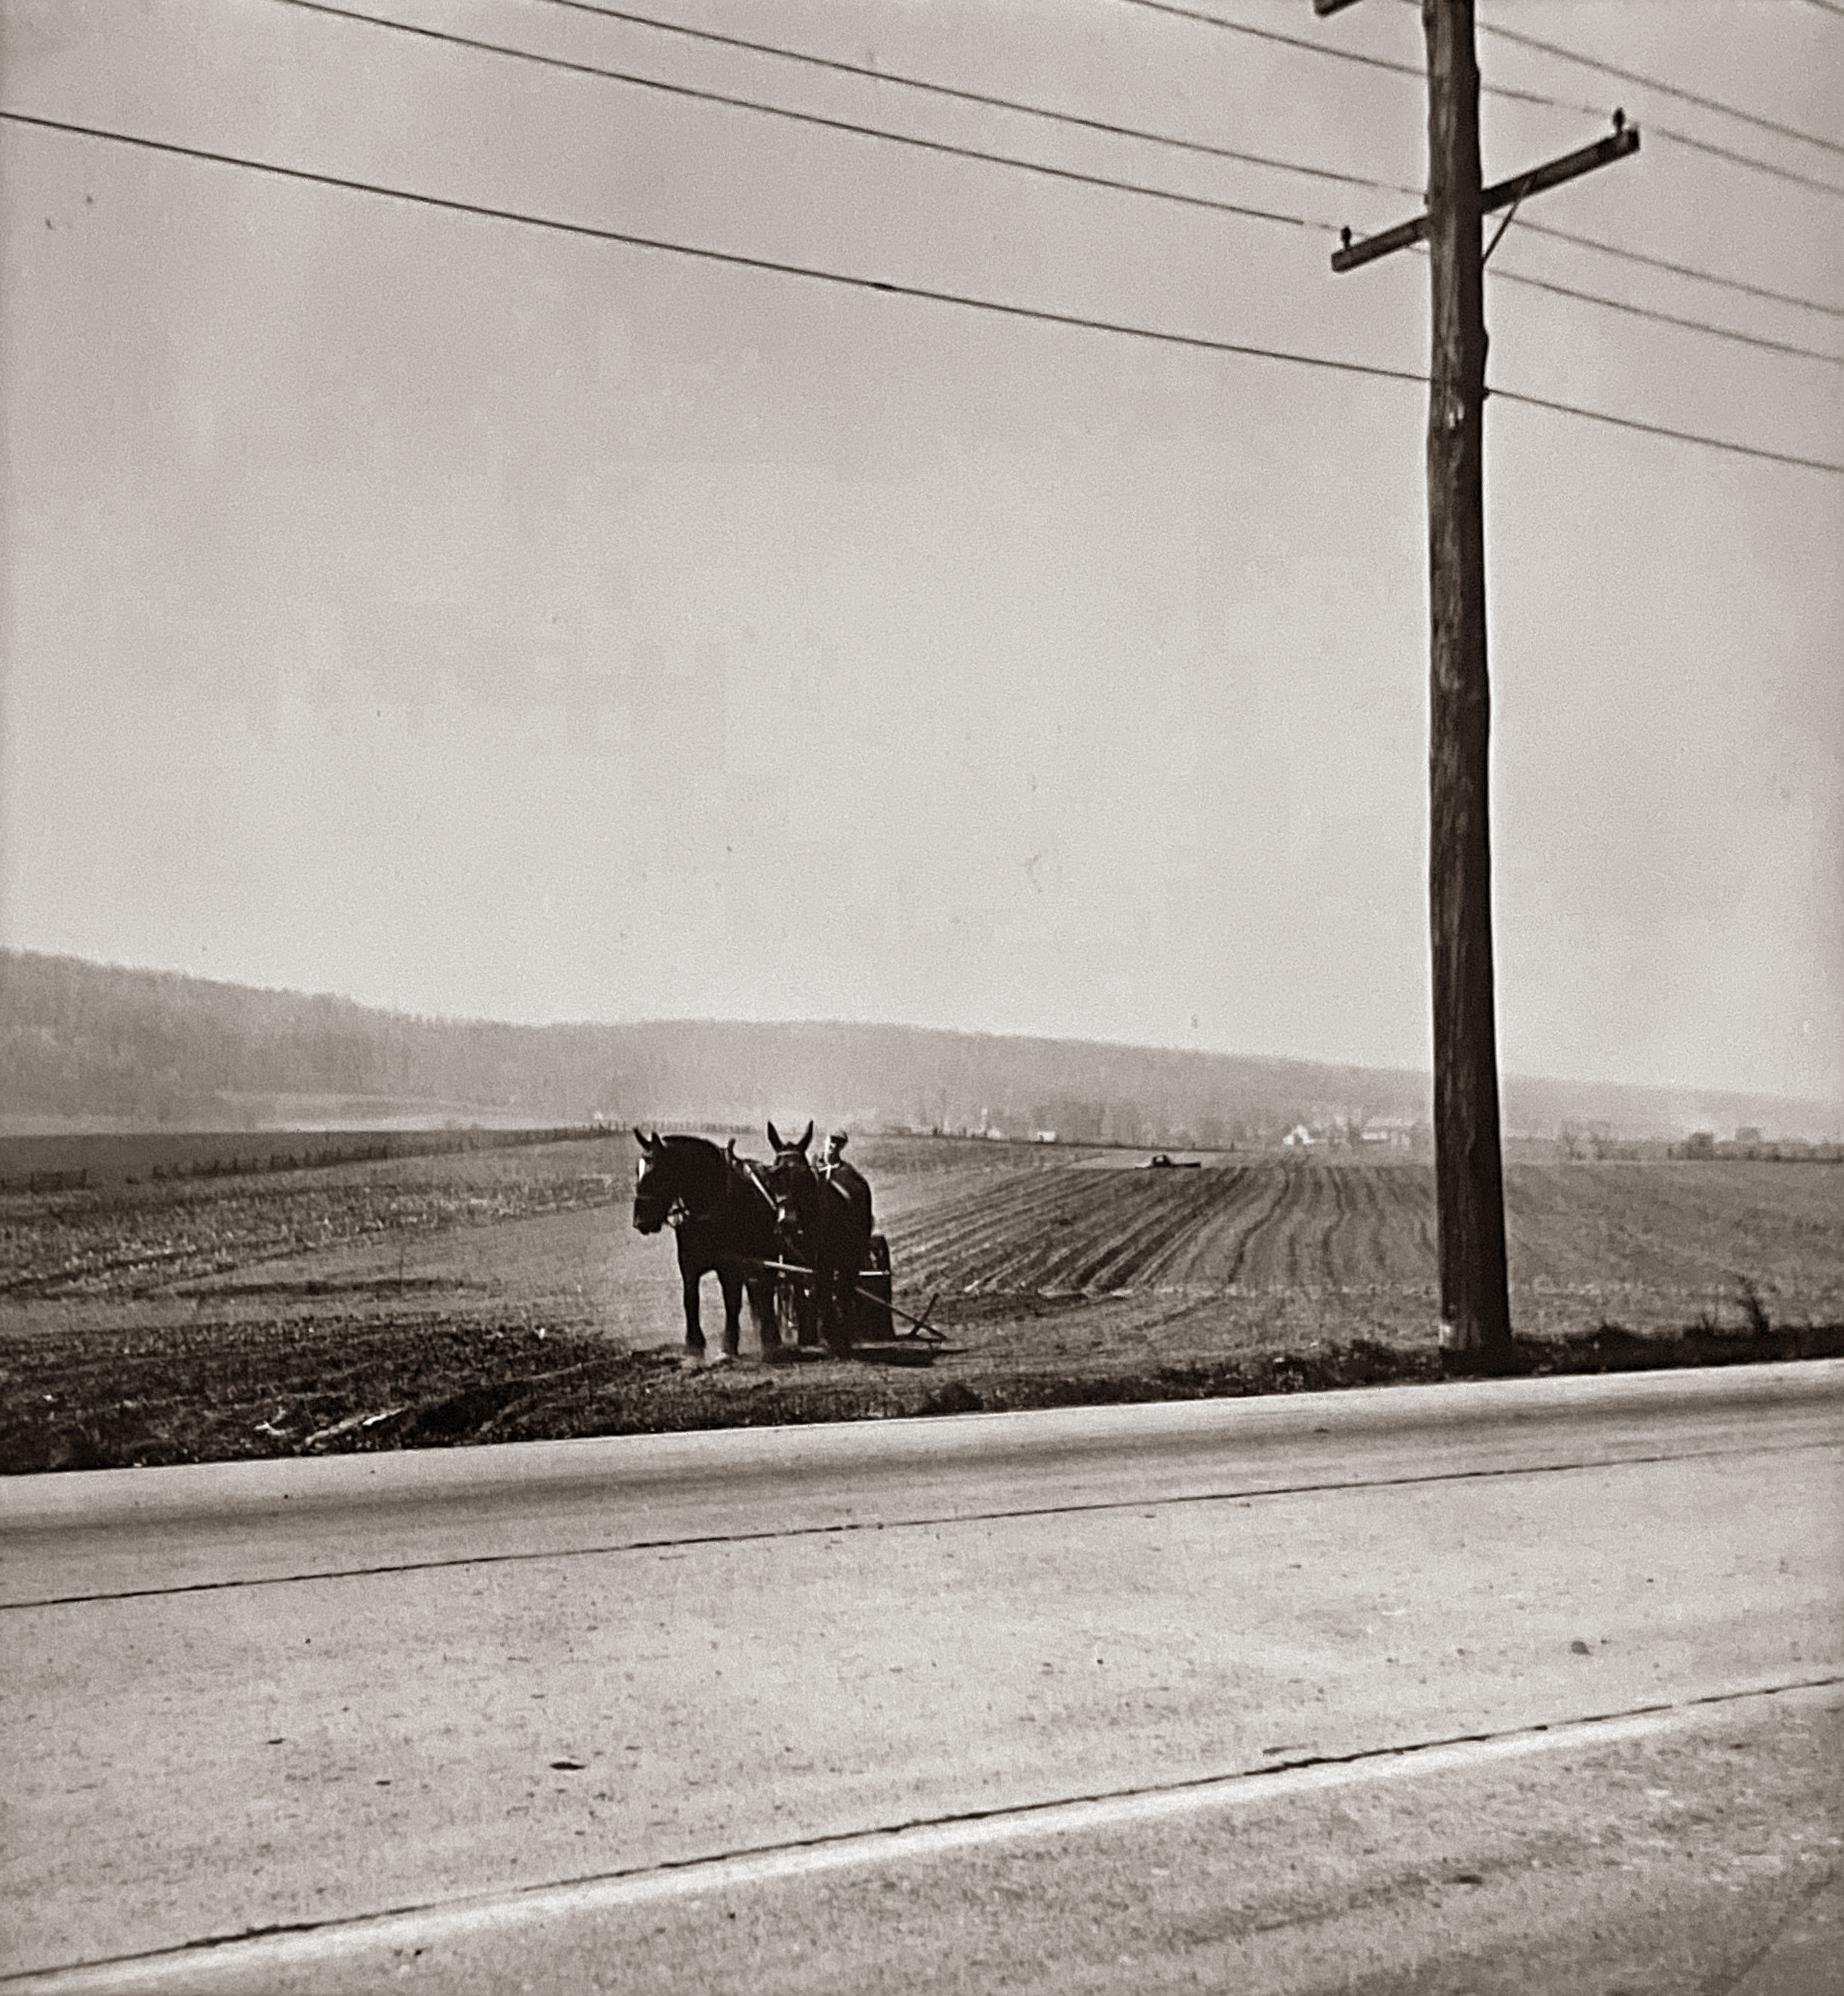 Gordon Parks Landscape Photograph - Farm, road, and telephone lines. 1950